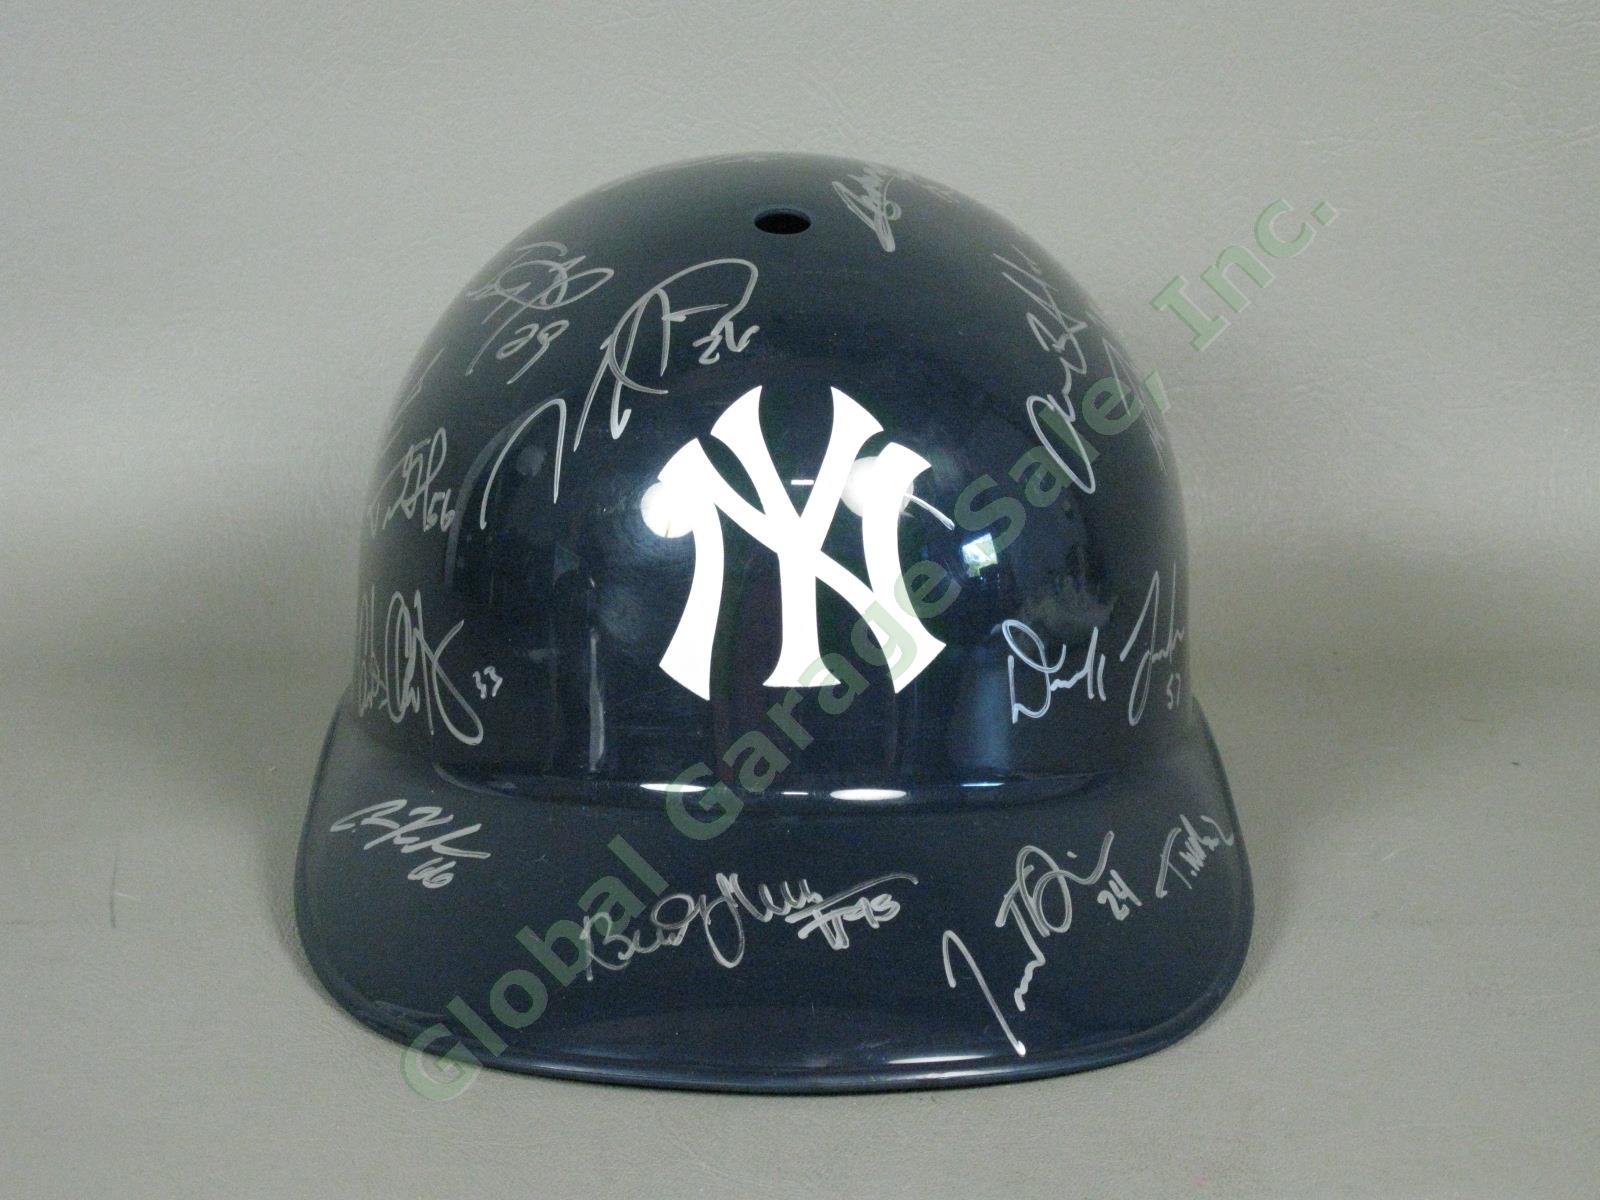 2013 Staten Island Yankees Team Signed Baseball Helmet MiLB MLB NYPL New York NR